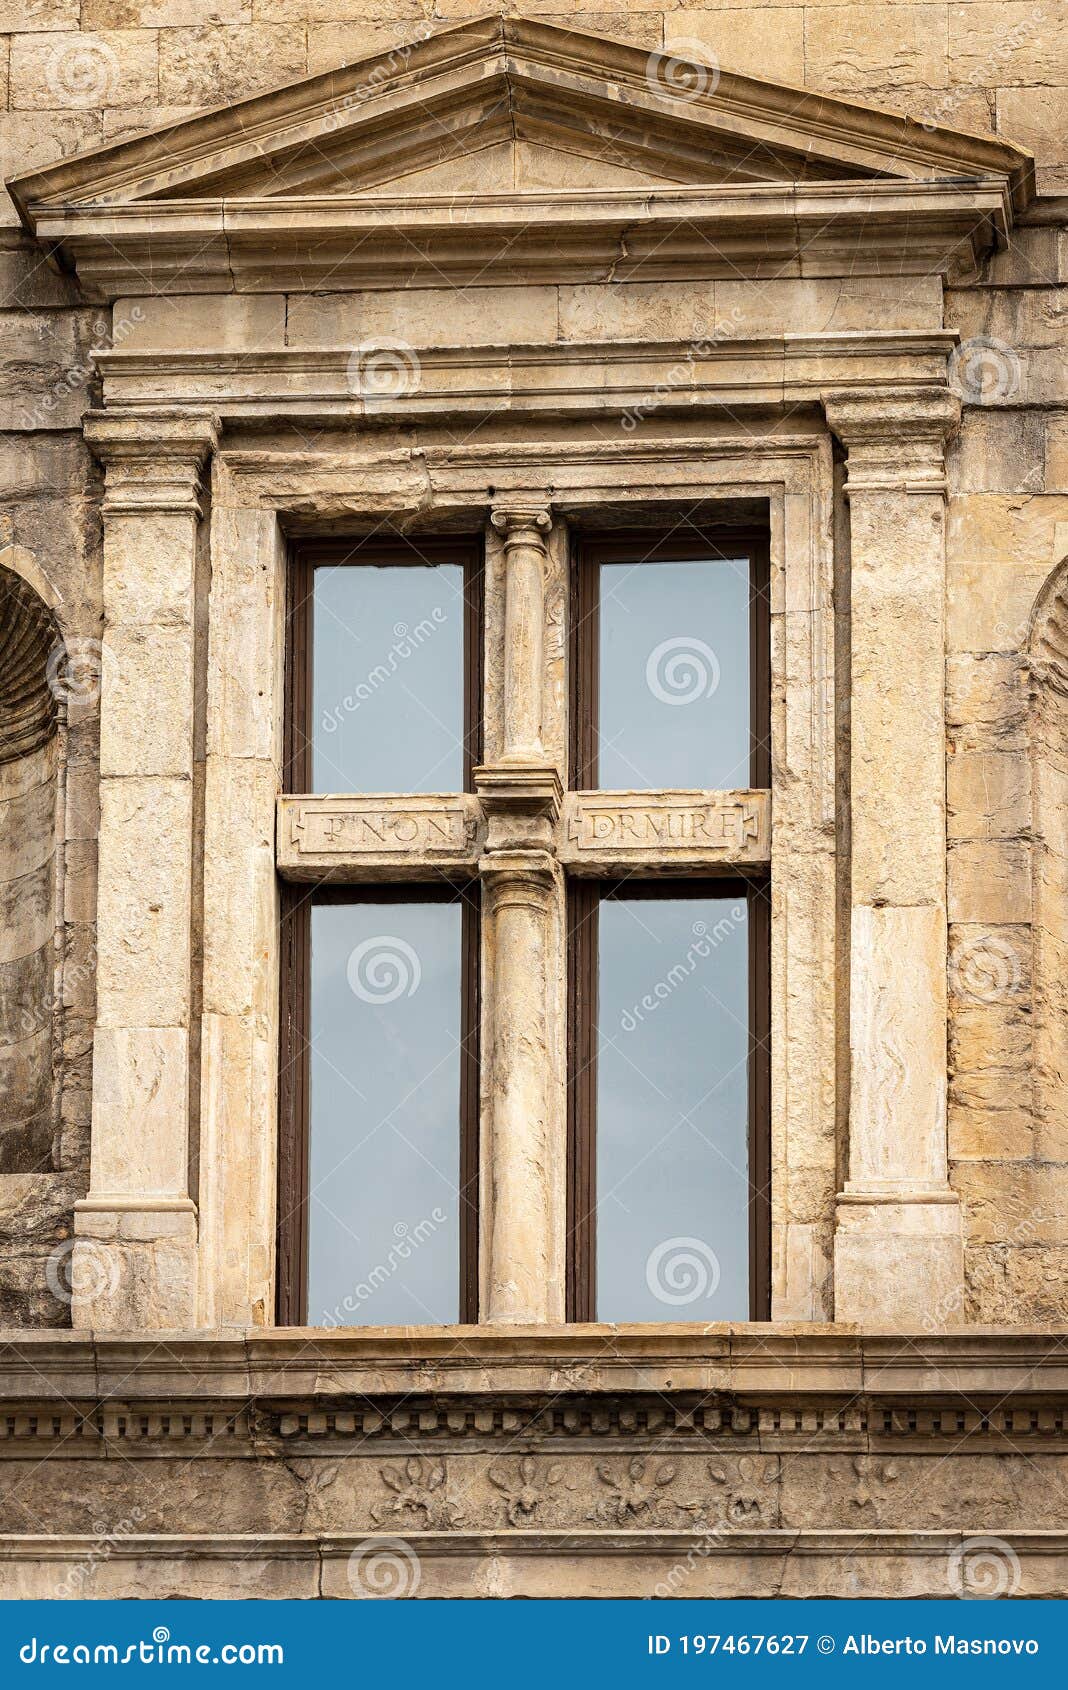 bartolini salimbeni palace in florence tuscany italy - window